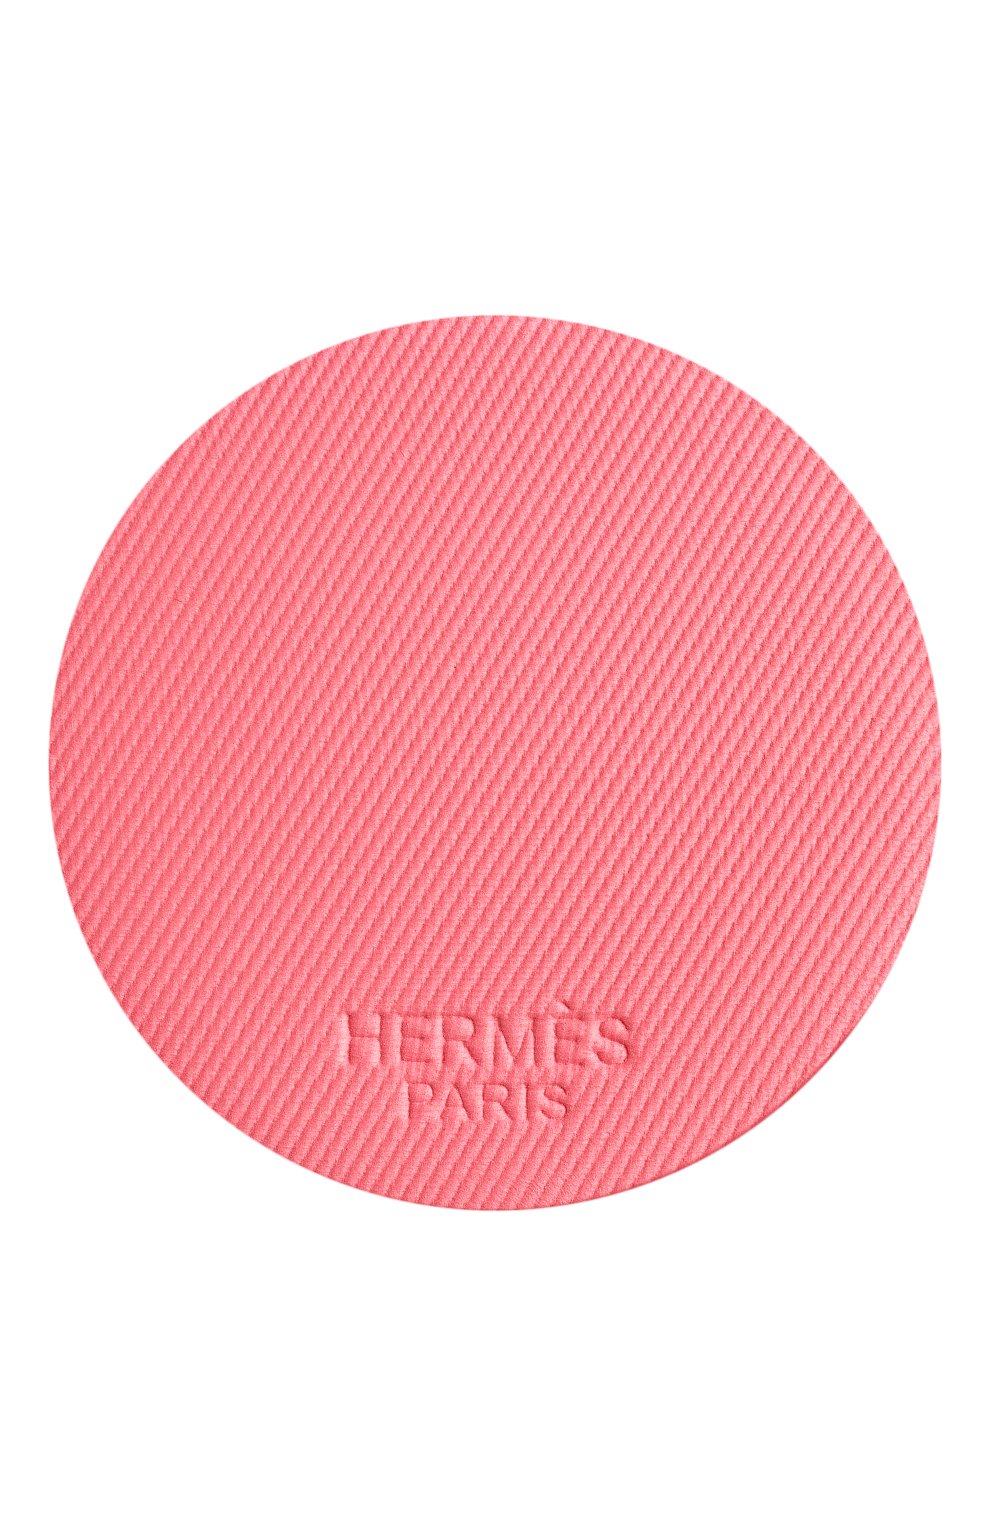 Румяна rose hermès silky blush, rose pommette (6g) HERMÈS  цвета, арт. 60165PV032H | Фото 10